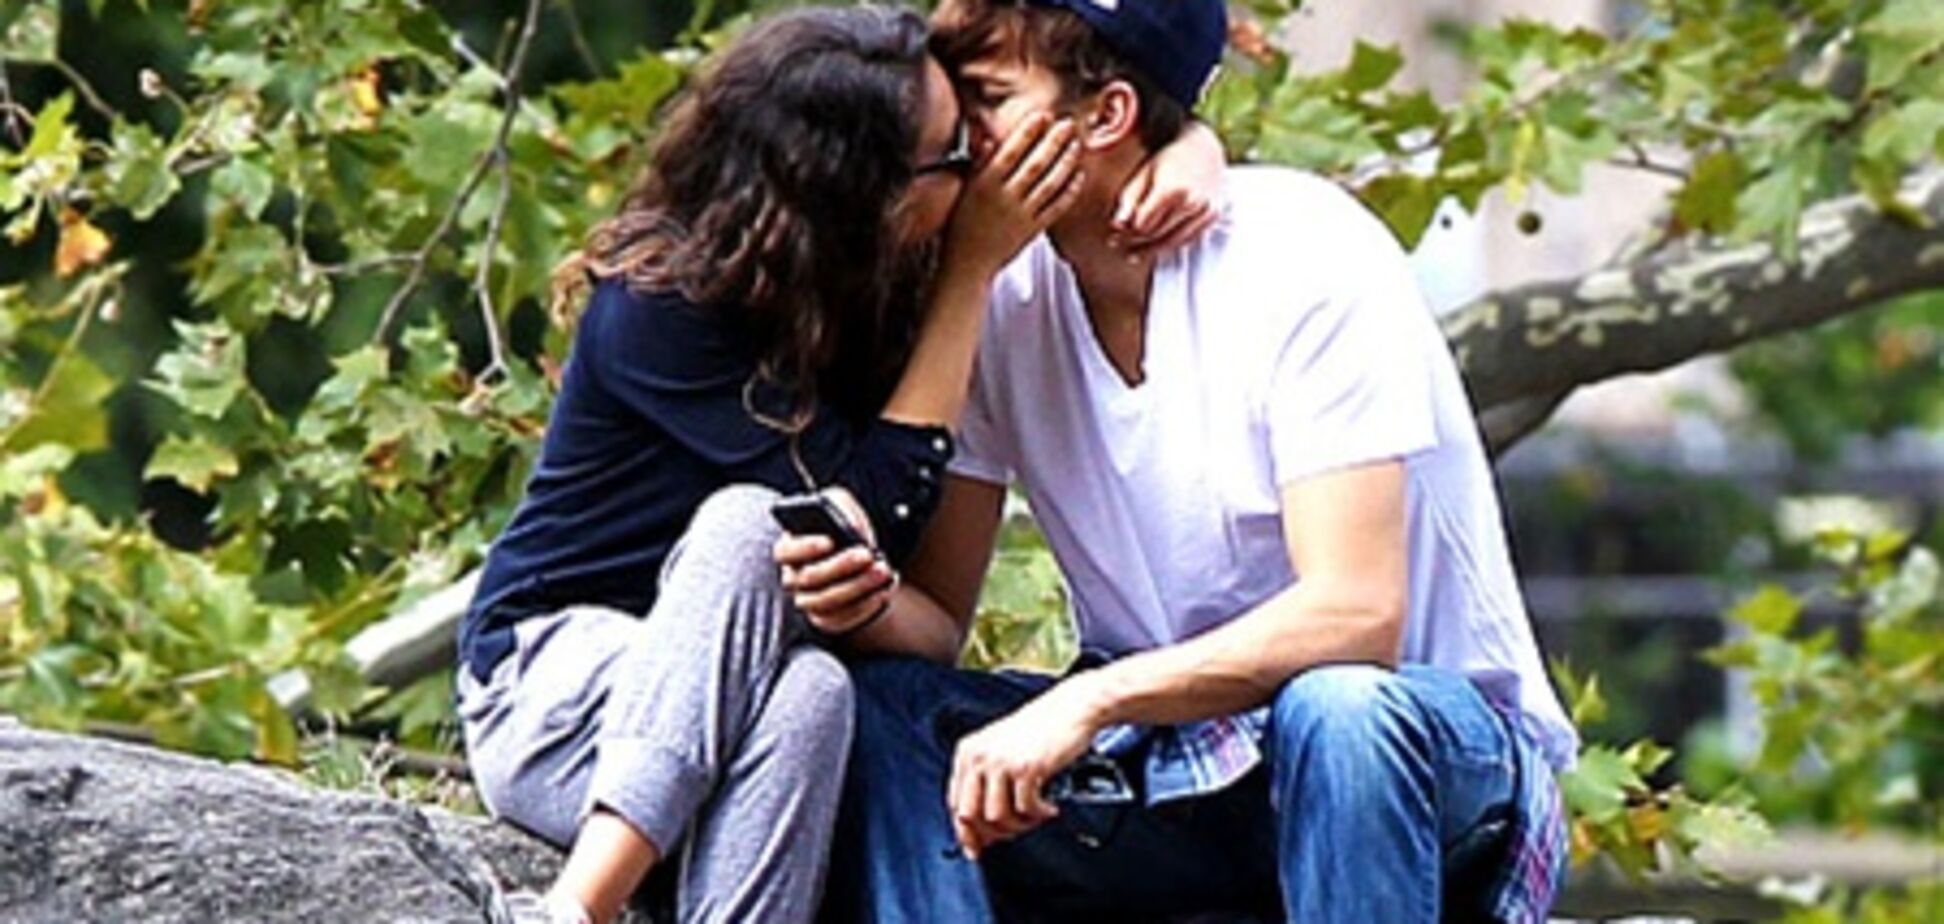 Кунис и Катчер целуются в парке. Фото